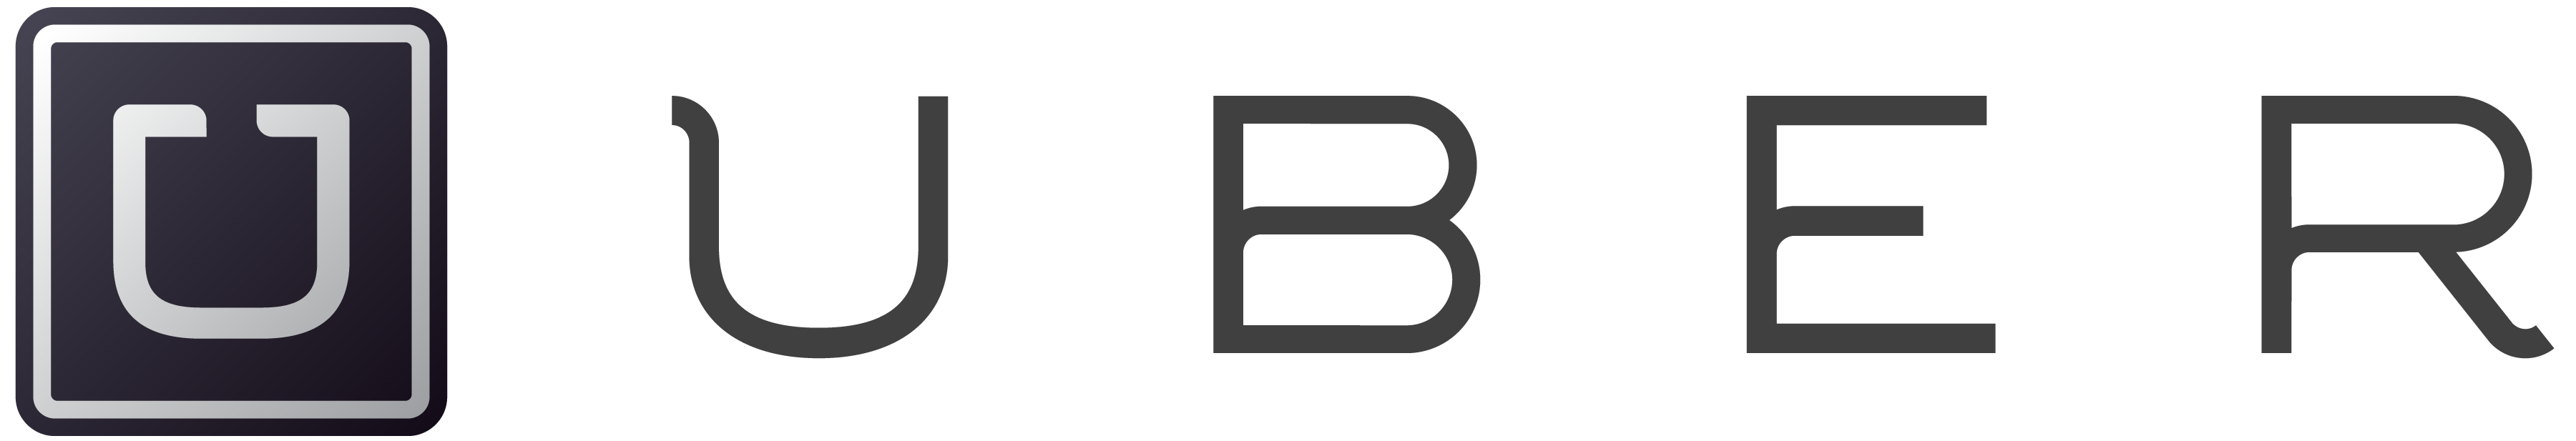 uber-logo